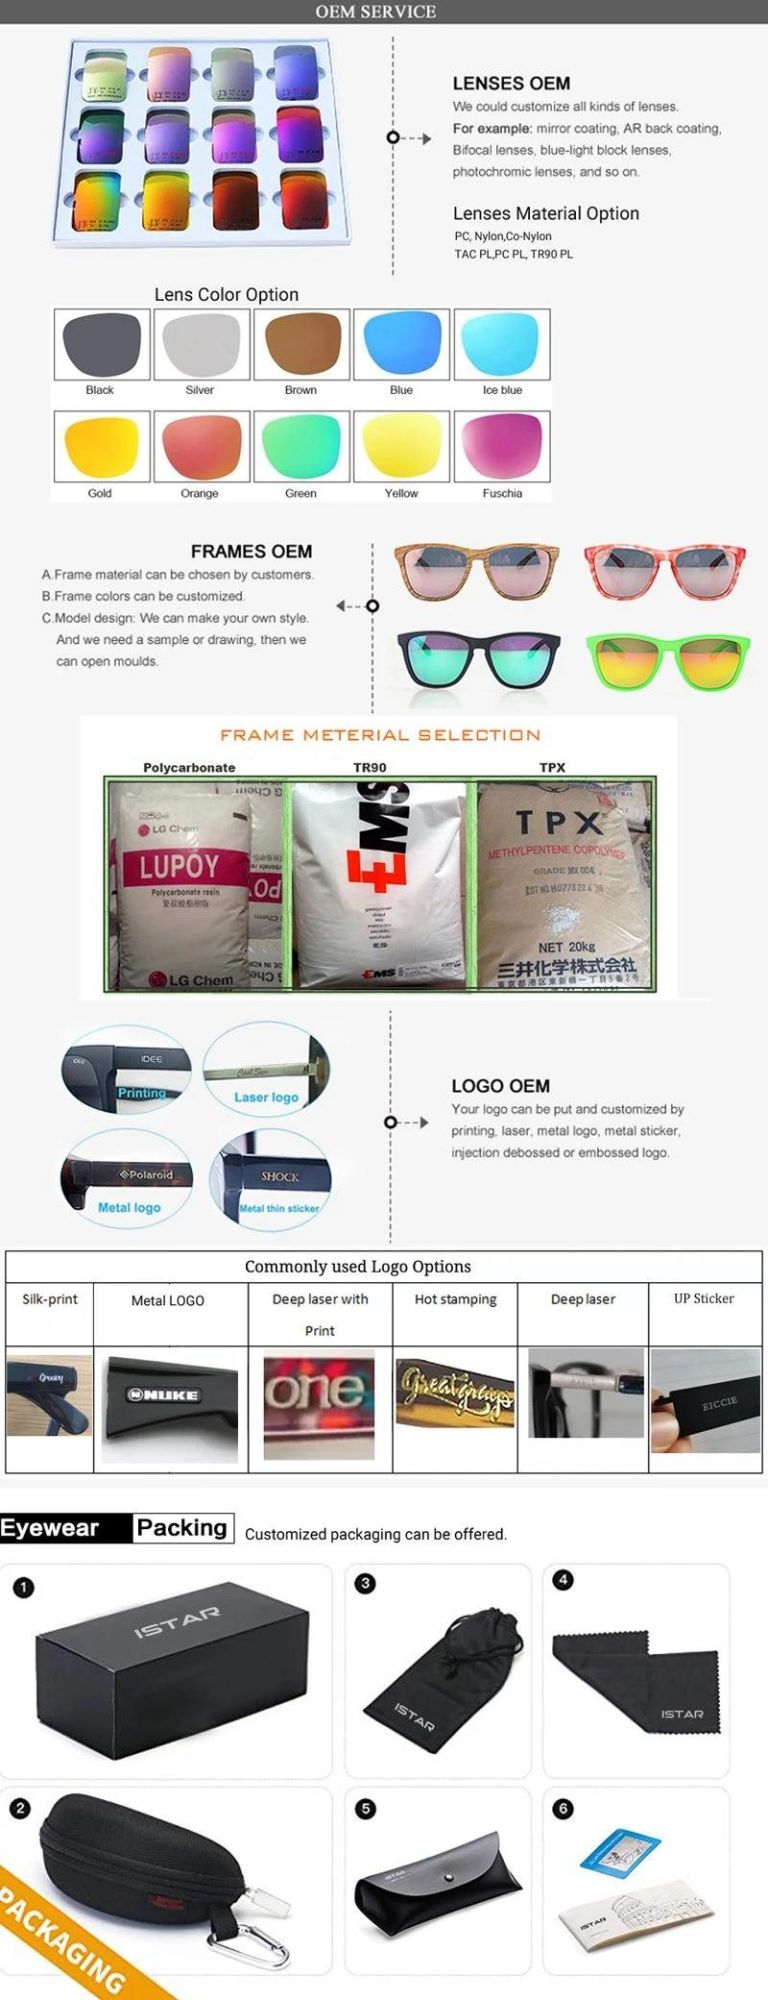 New Design Professional Eyeglasses Oversized Round Frame Unisex Sports Sunglasses